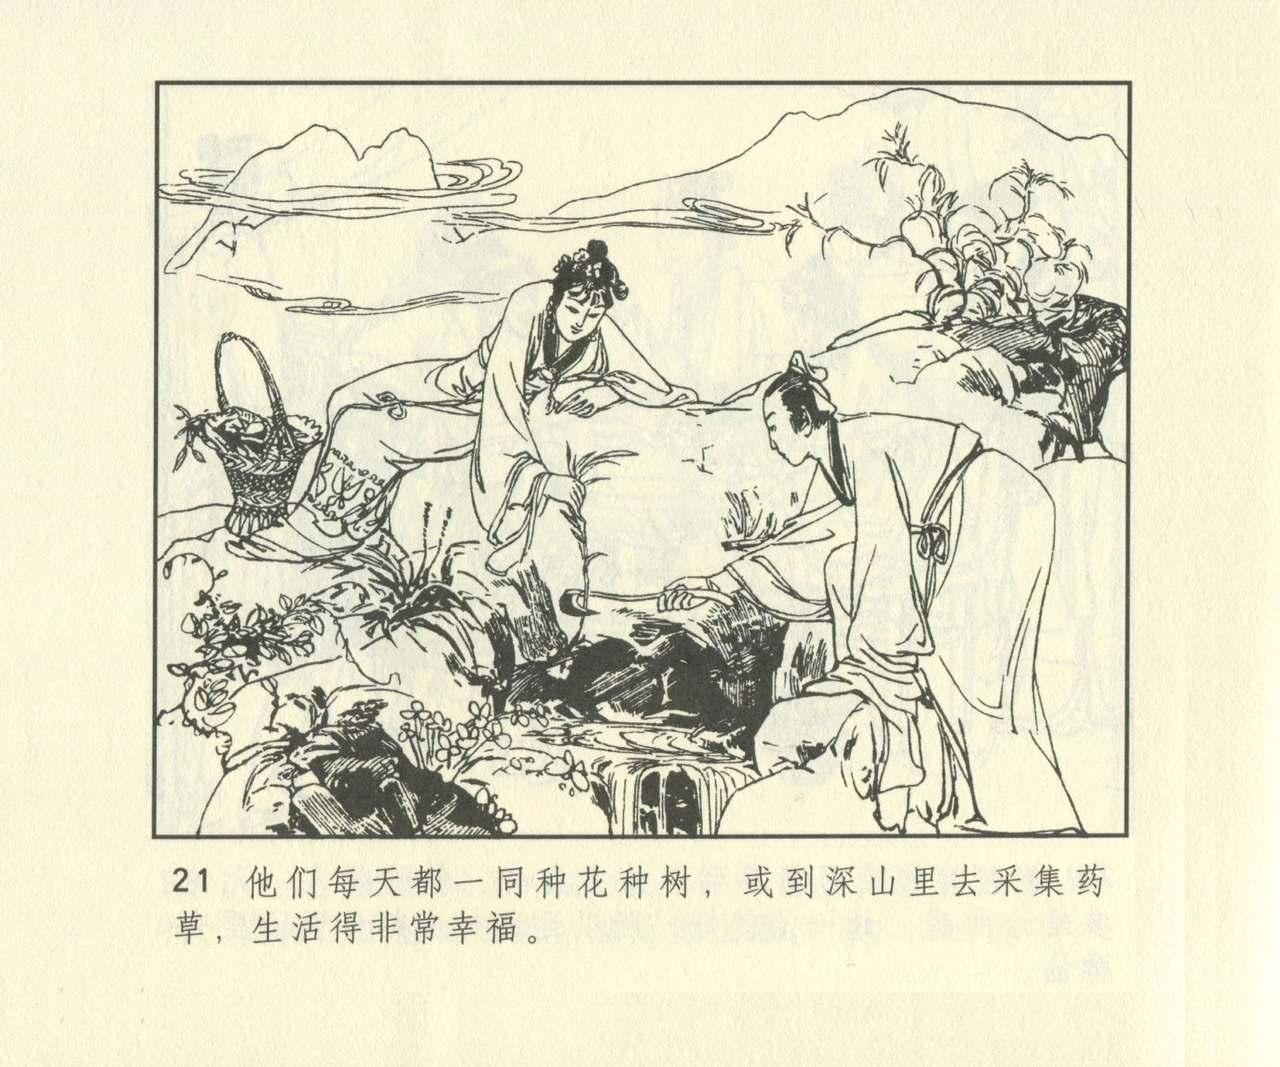 聊斋志异 张玮等绘 天津人民美术出版社 卷二十一 ~ 三十 637